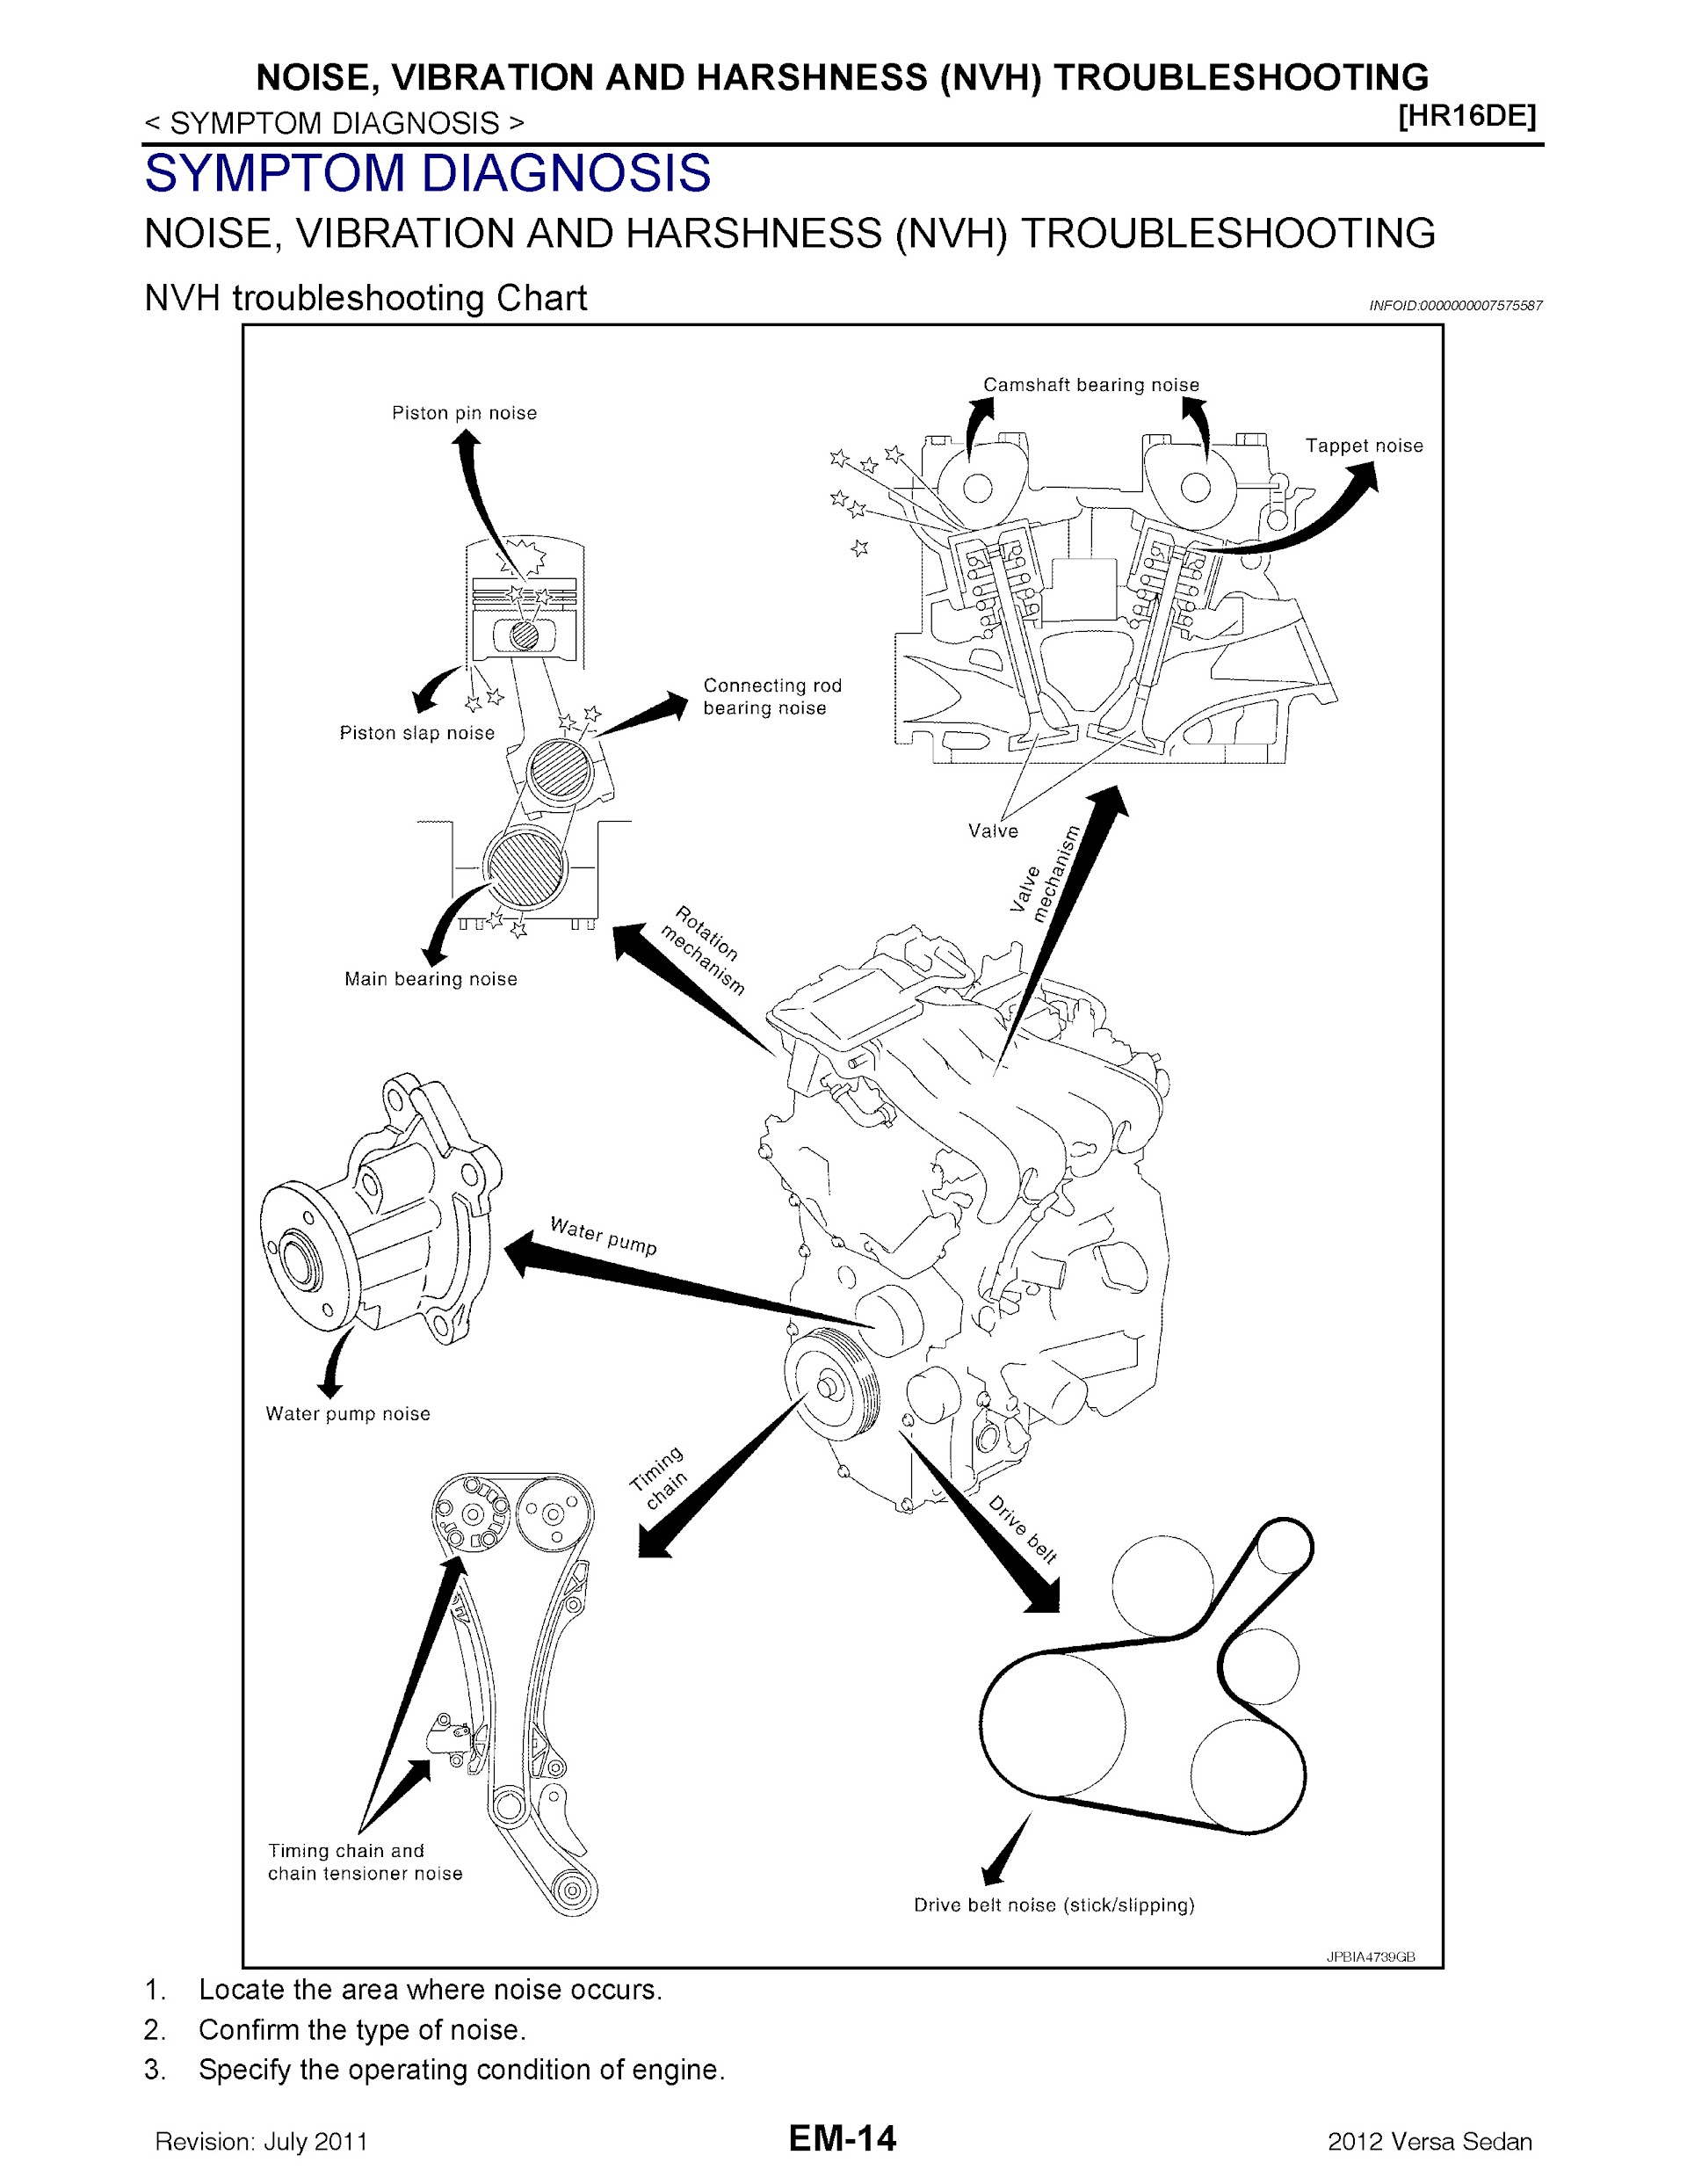 Download 2011-2012 Nissan Versa Repair Manual